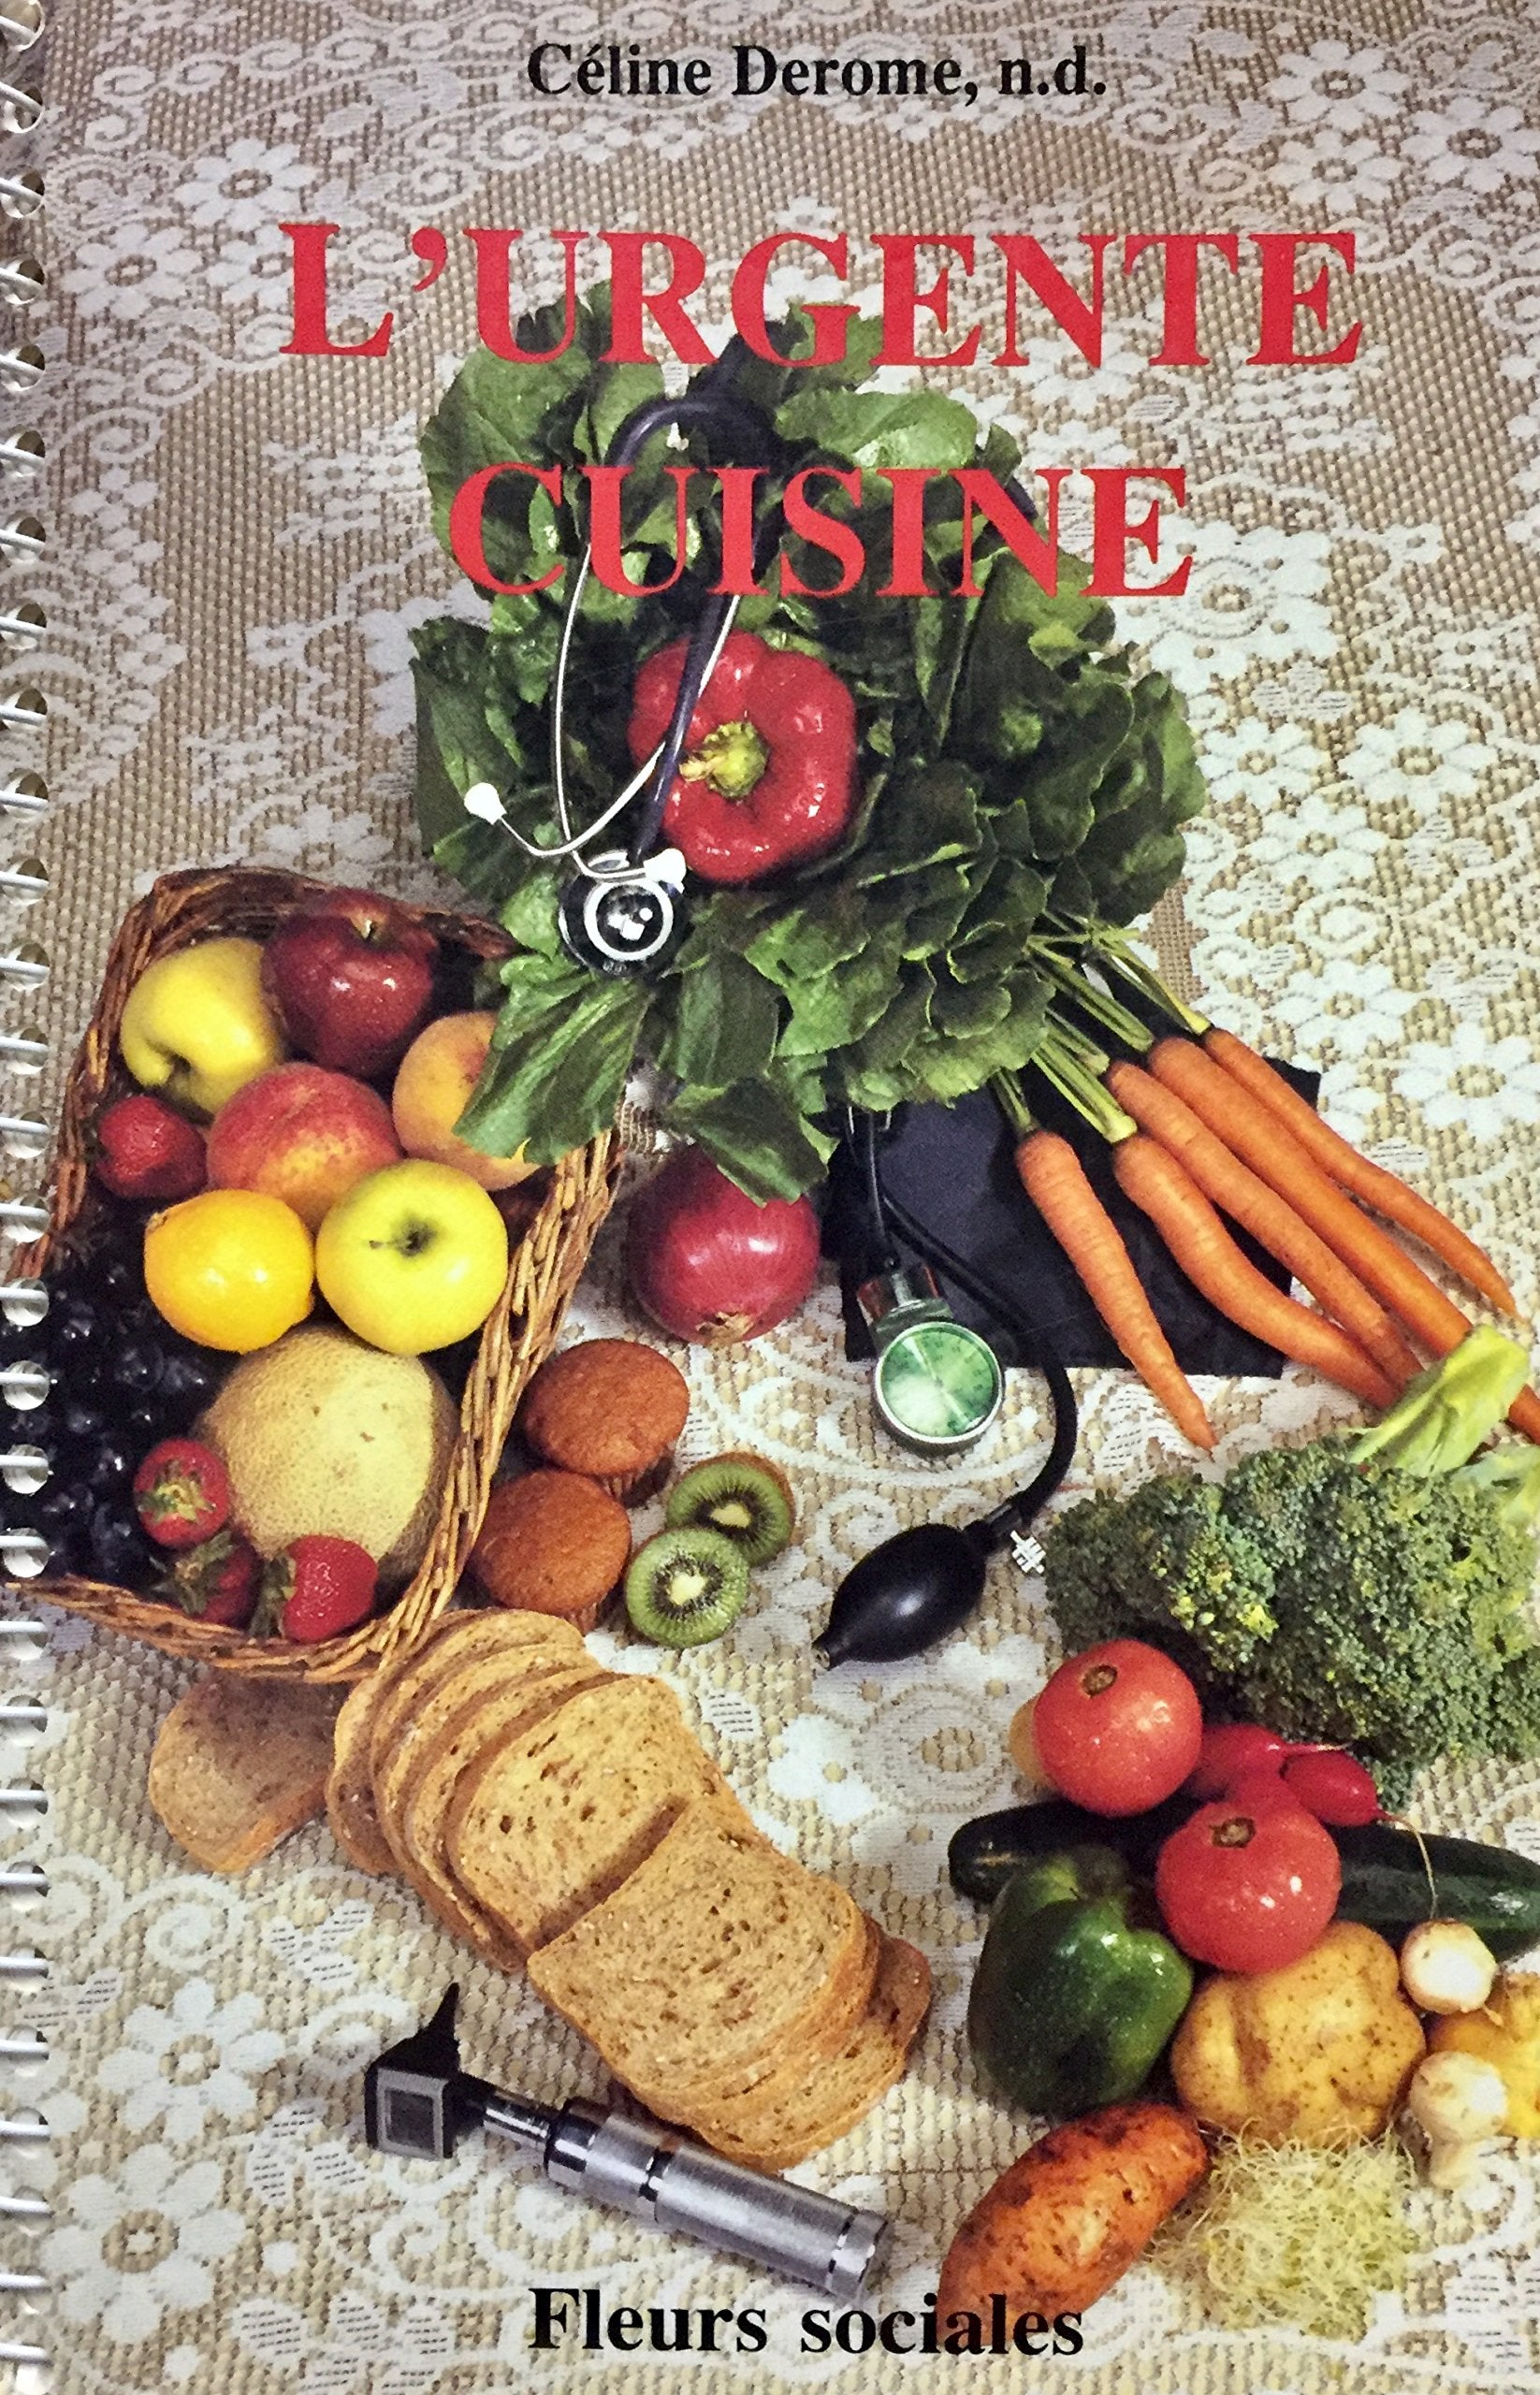 Livre ISBN 2920540076 L'urgente cuisine (Céline Derome)